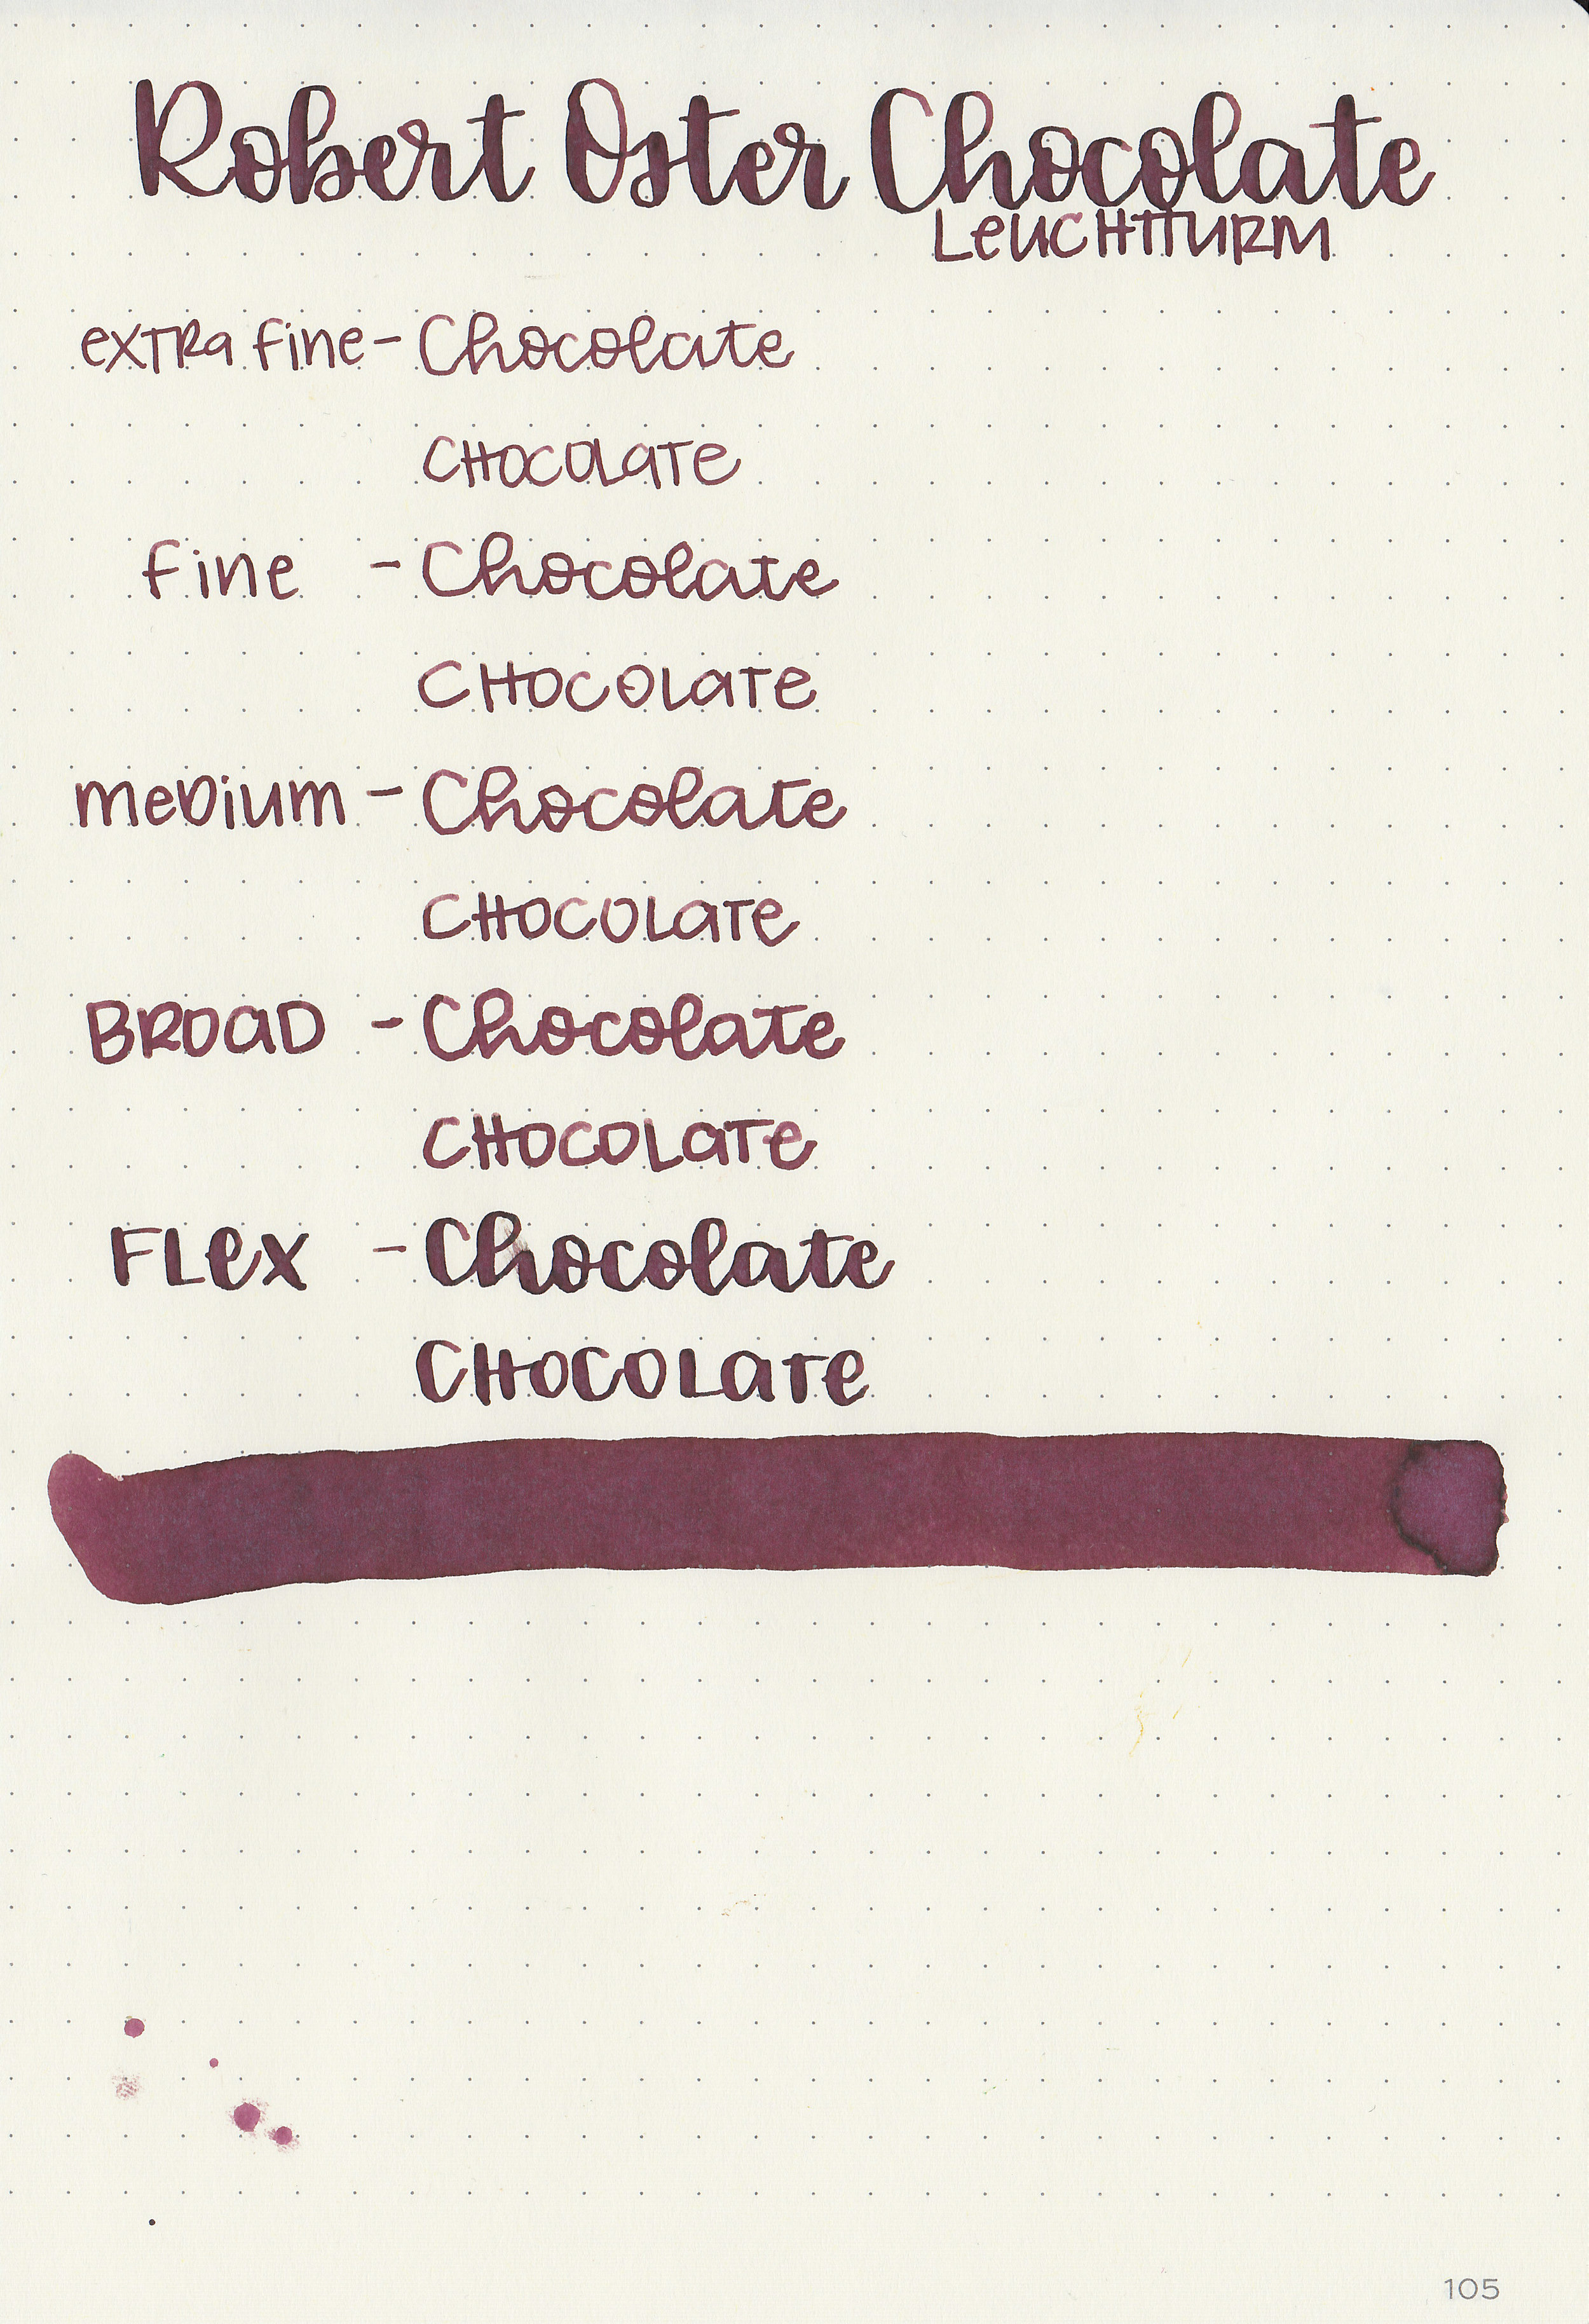 ro-chocolate-9.jpg